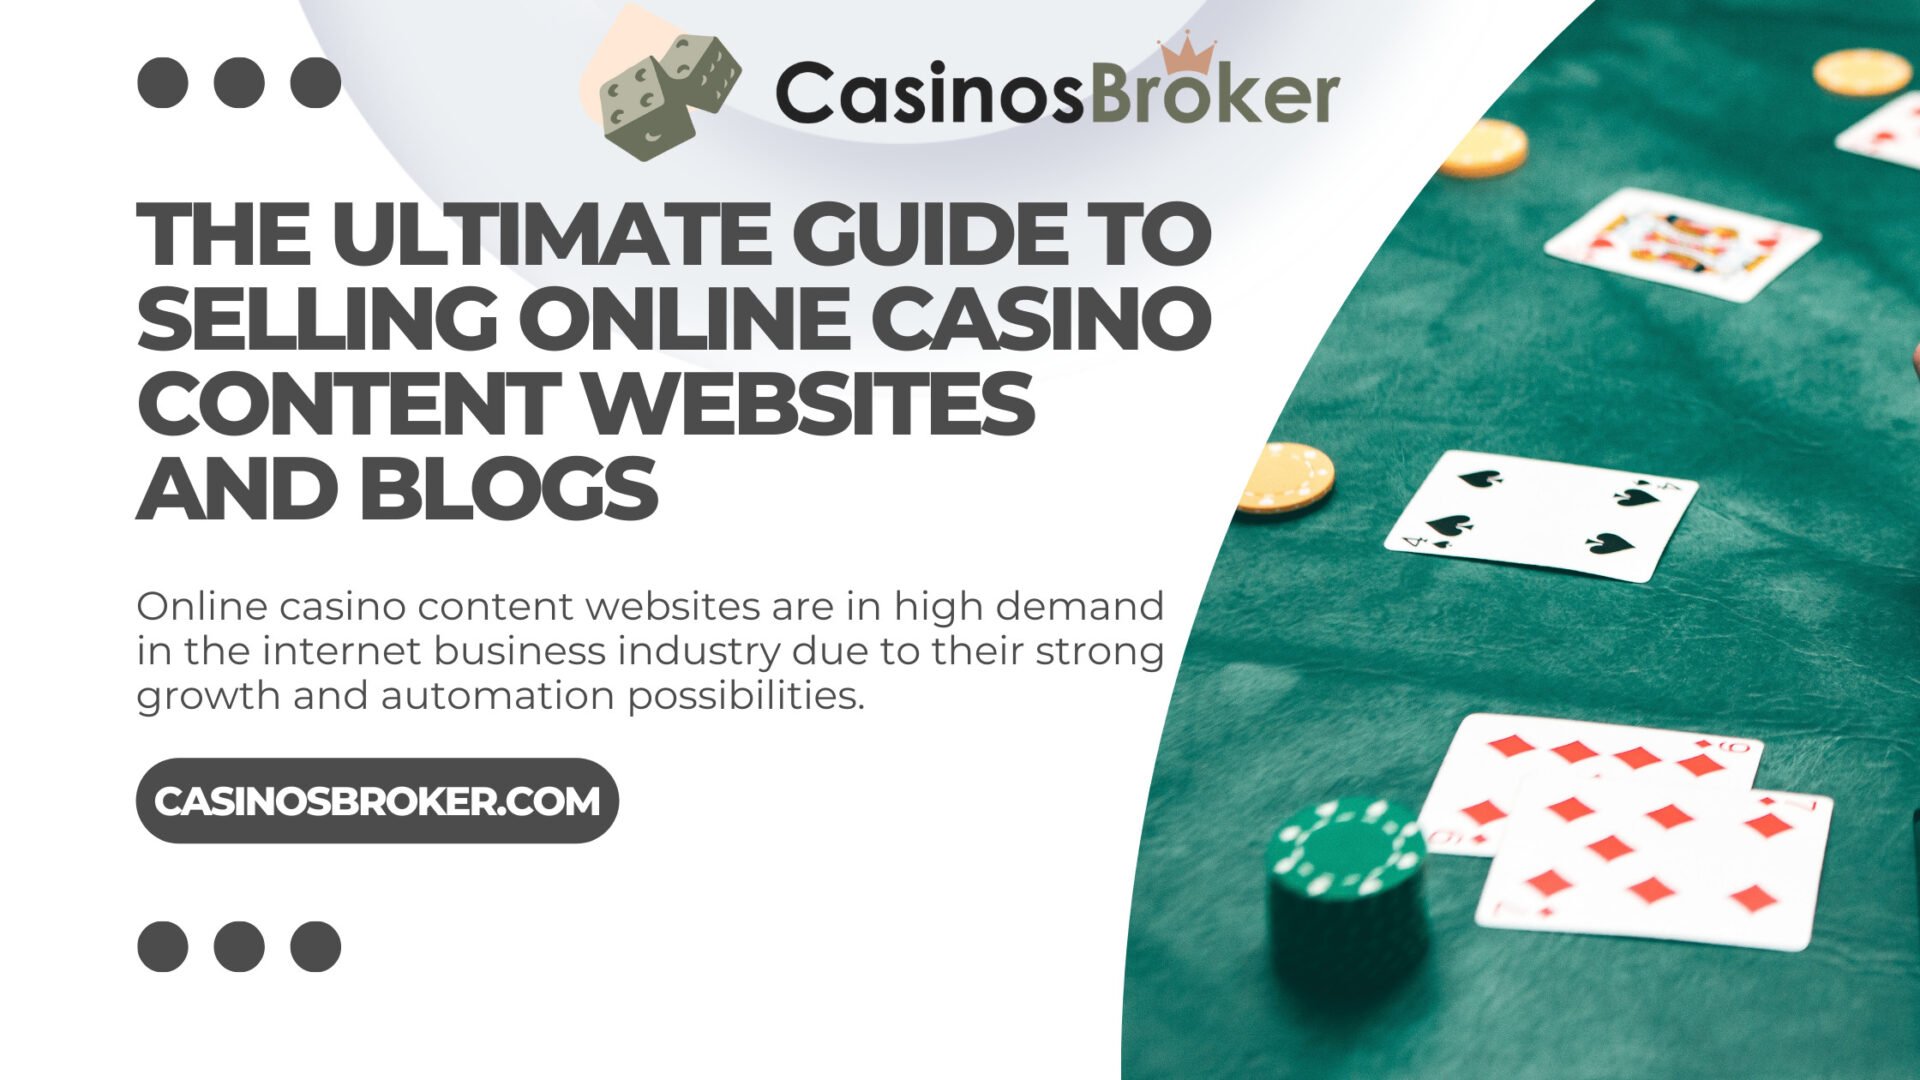 La guía definitiva para vender sitios web y blogs con contenido de casino en línea